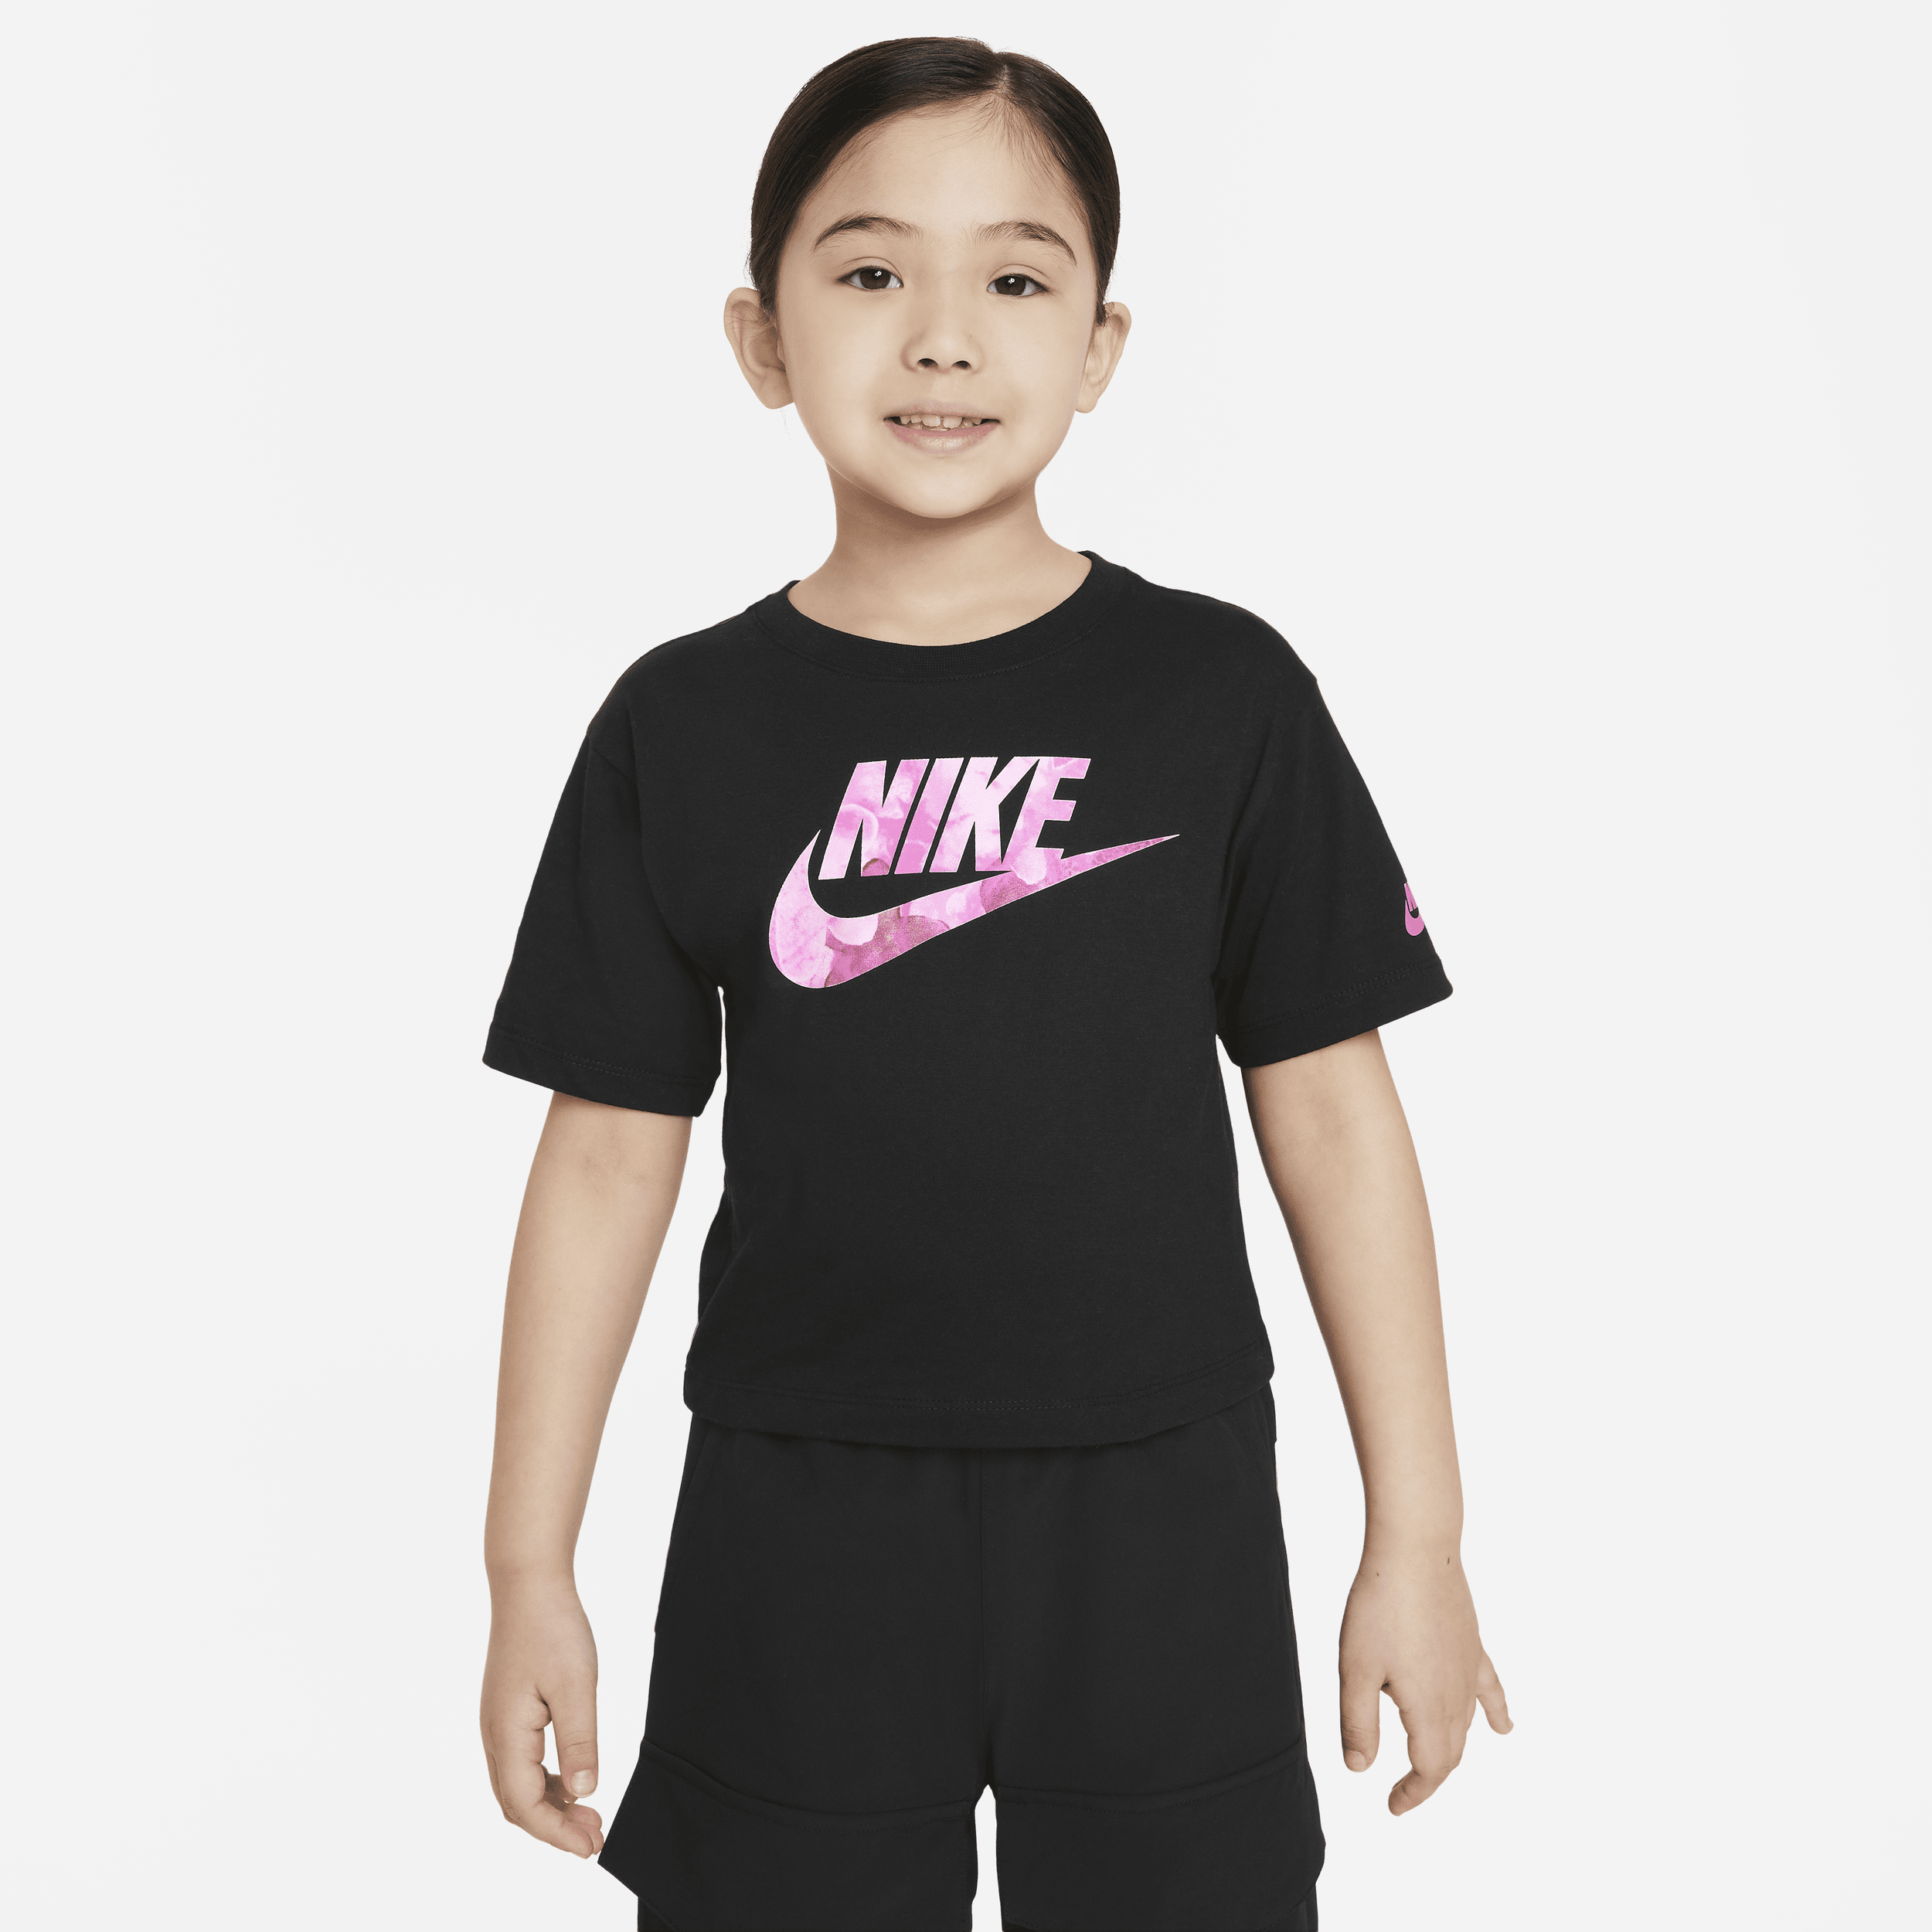 Nike Sci-Dye Boxy Tee Camiseta - Niño/a pequeño/a - Negro